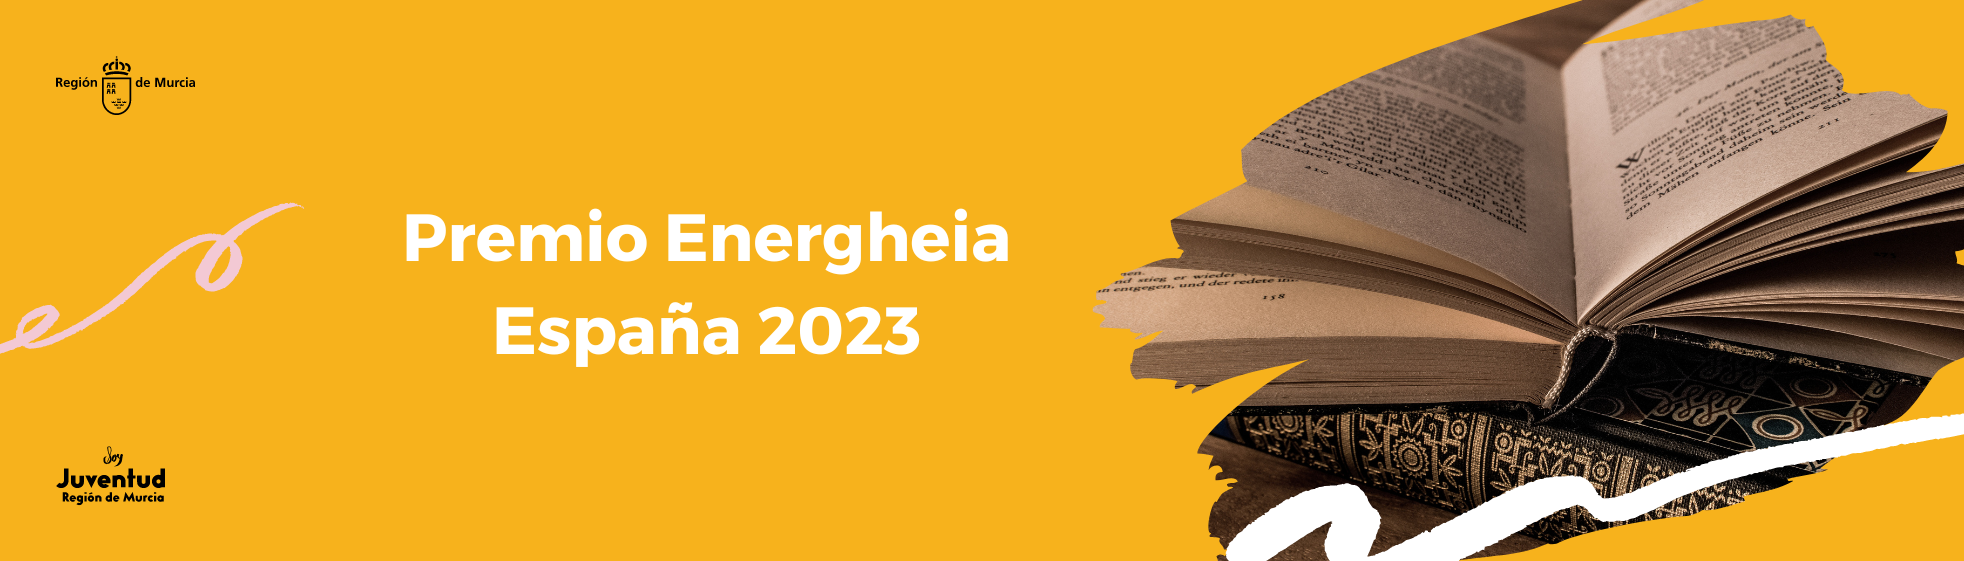 Premio Energheia España 2023